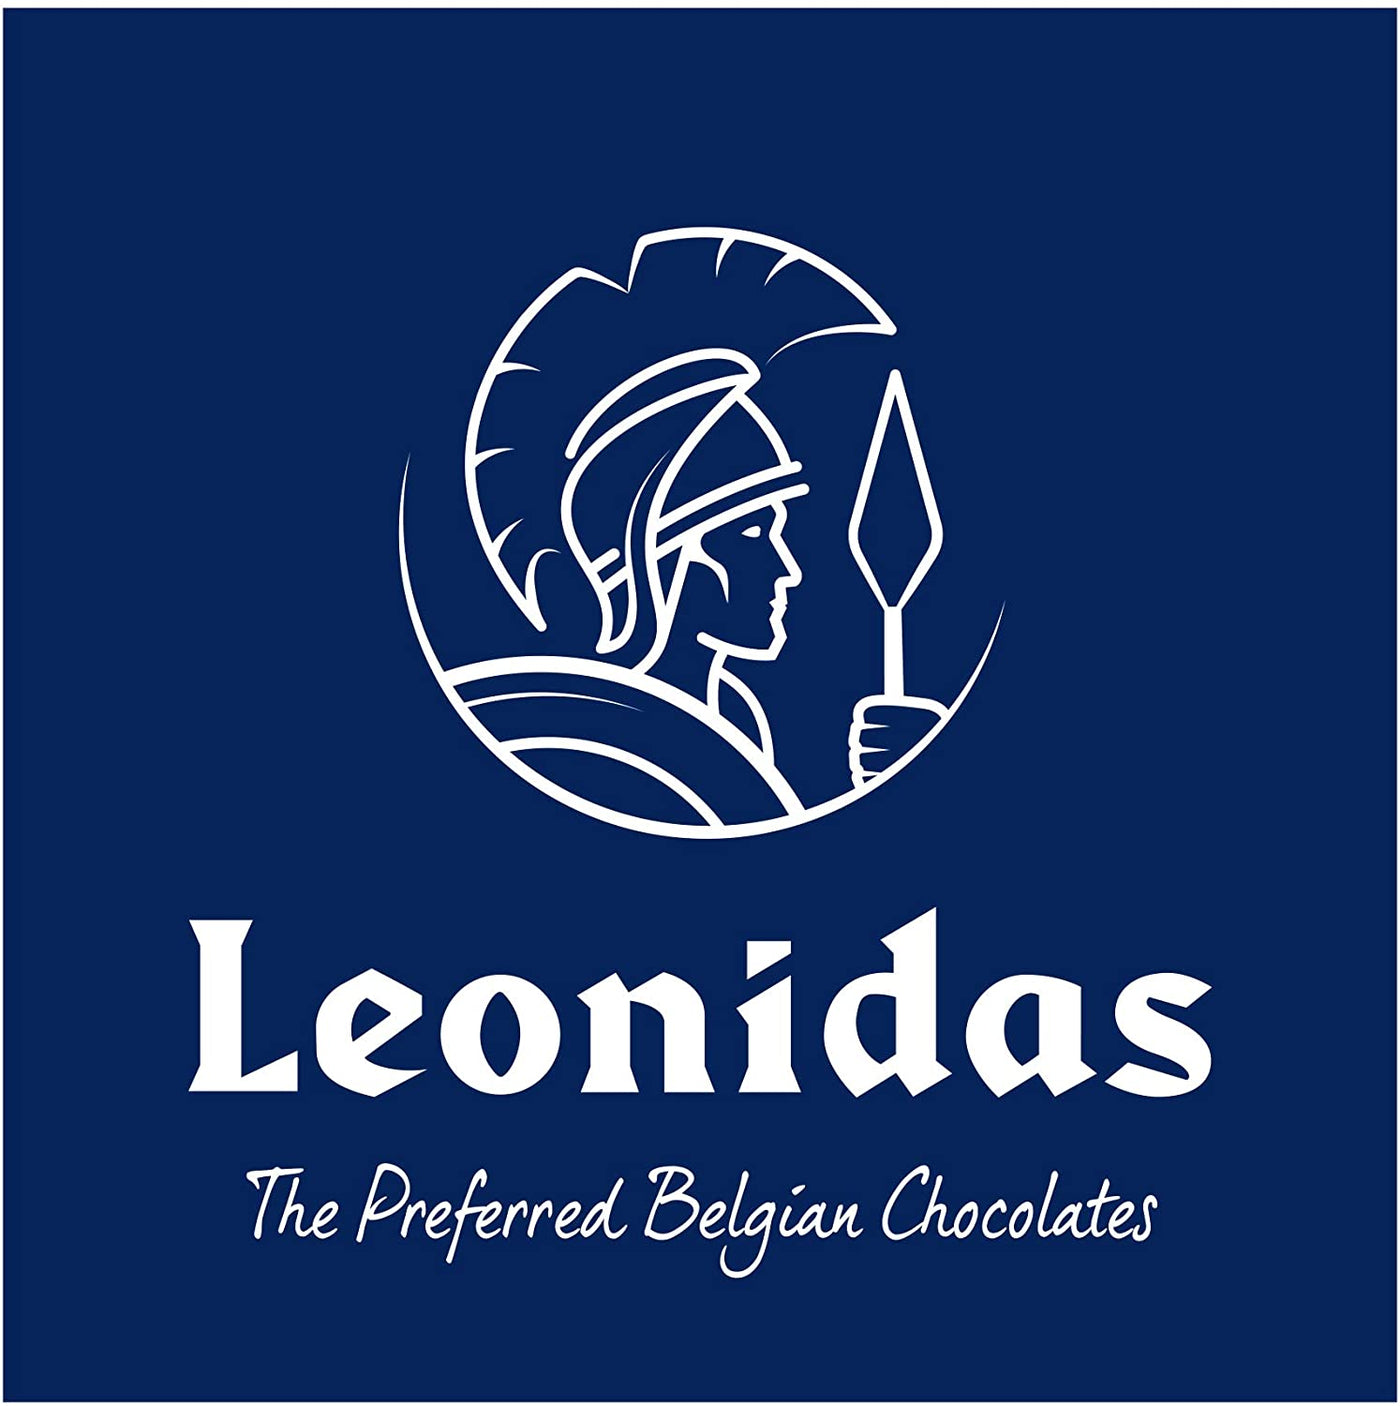 Leonidas Assortment of soft centred, coffee creams, ganache, butter creams Ballotin Box freeshipping - Leonidas Kensington